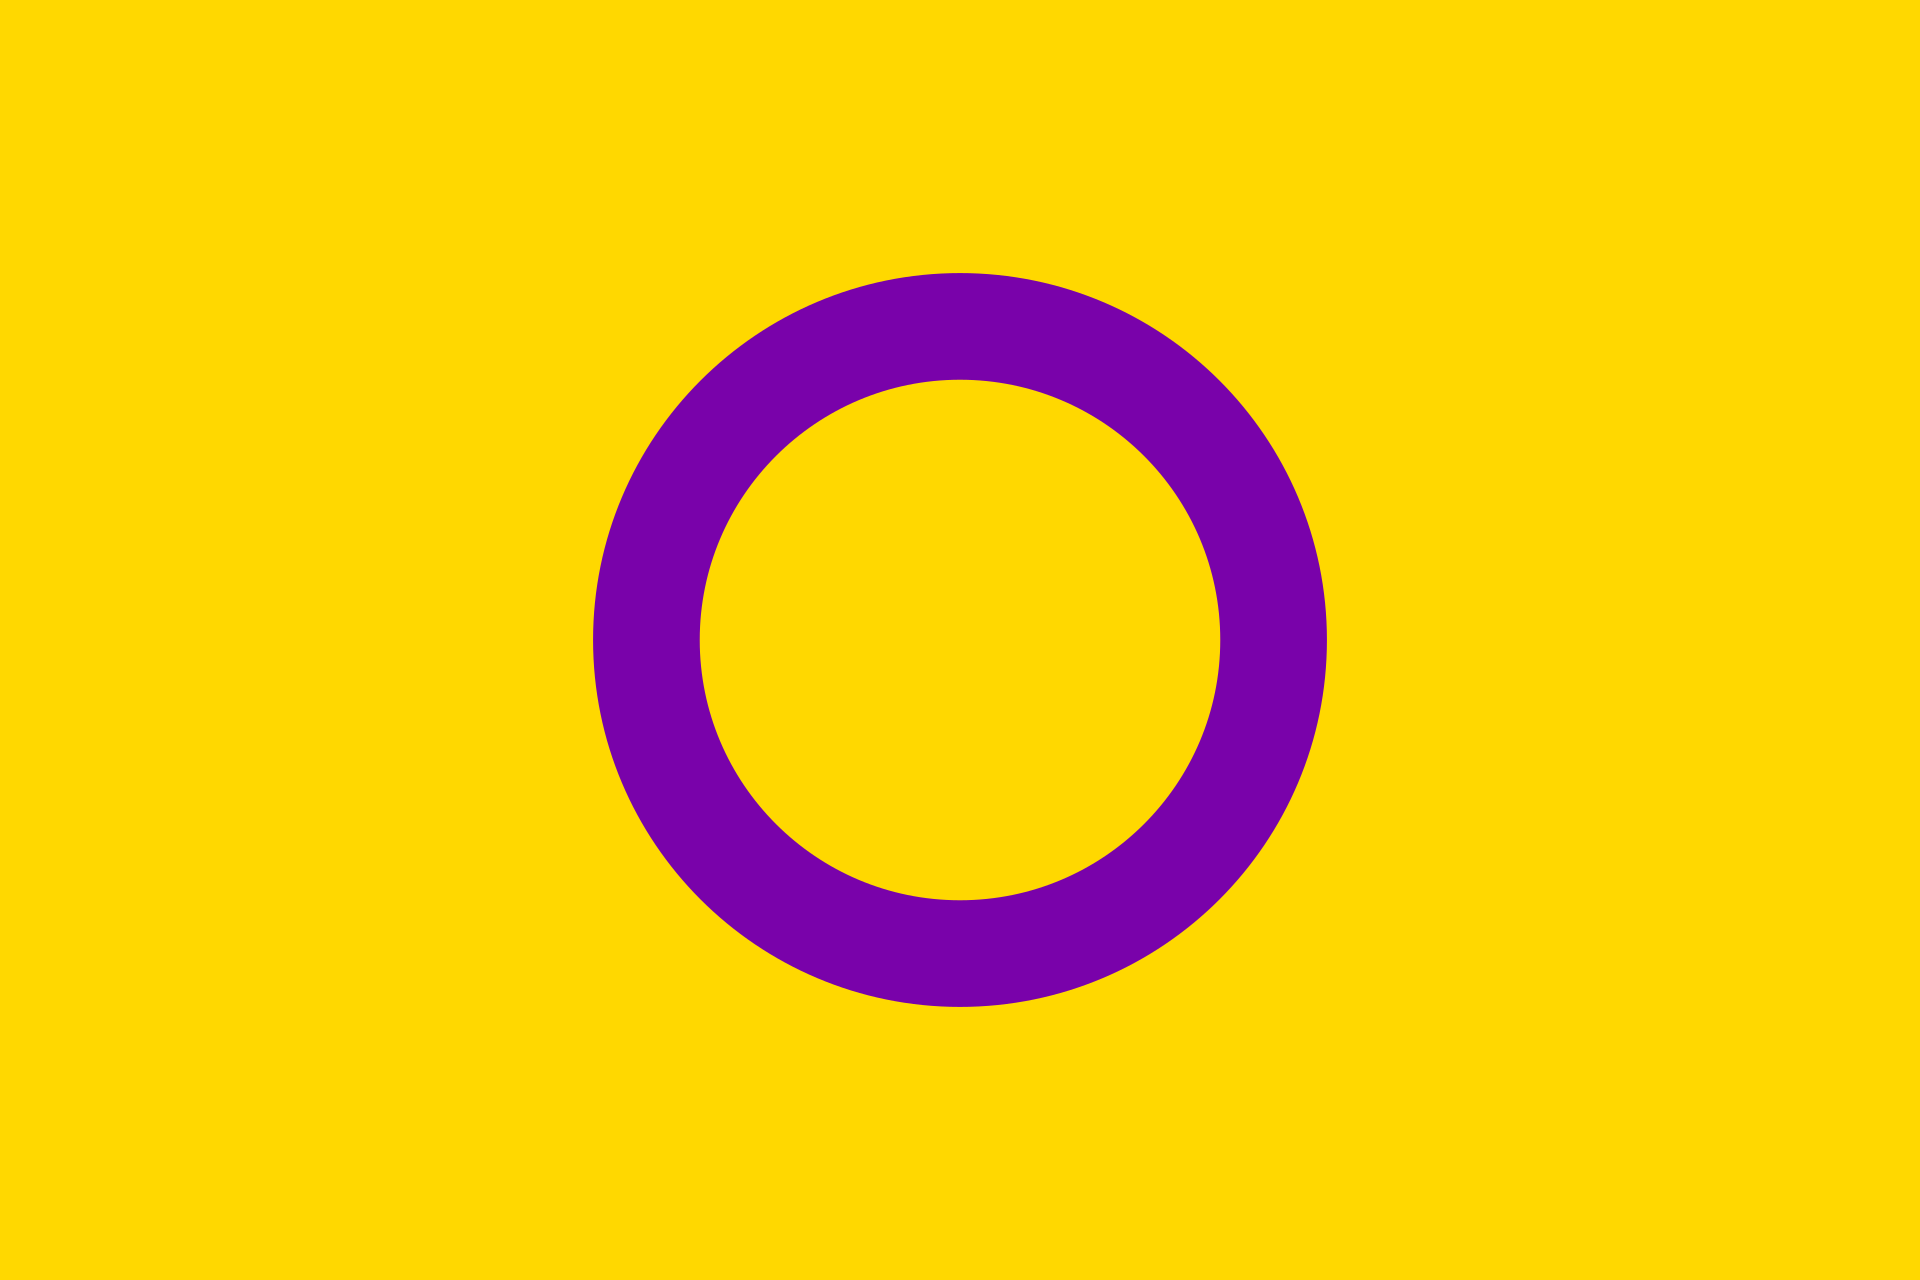 ondersteuning voor intersekse personen